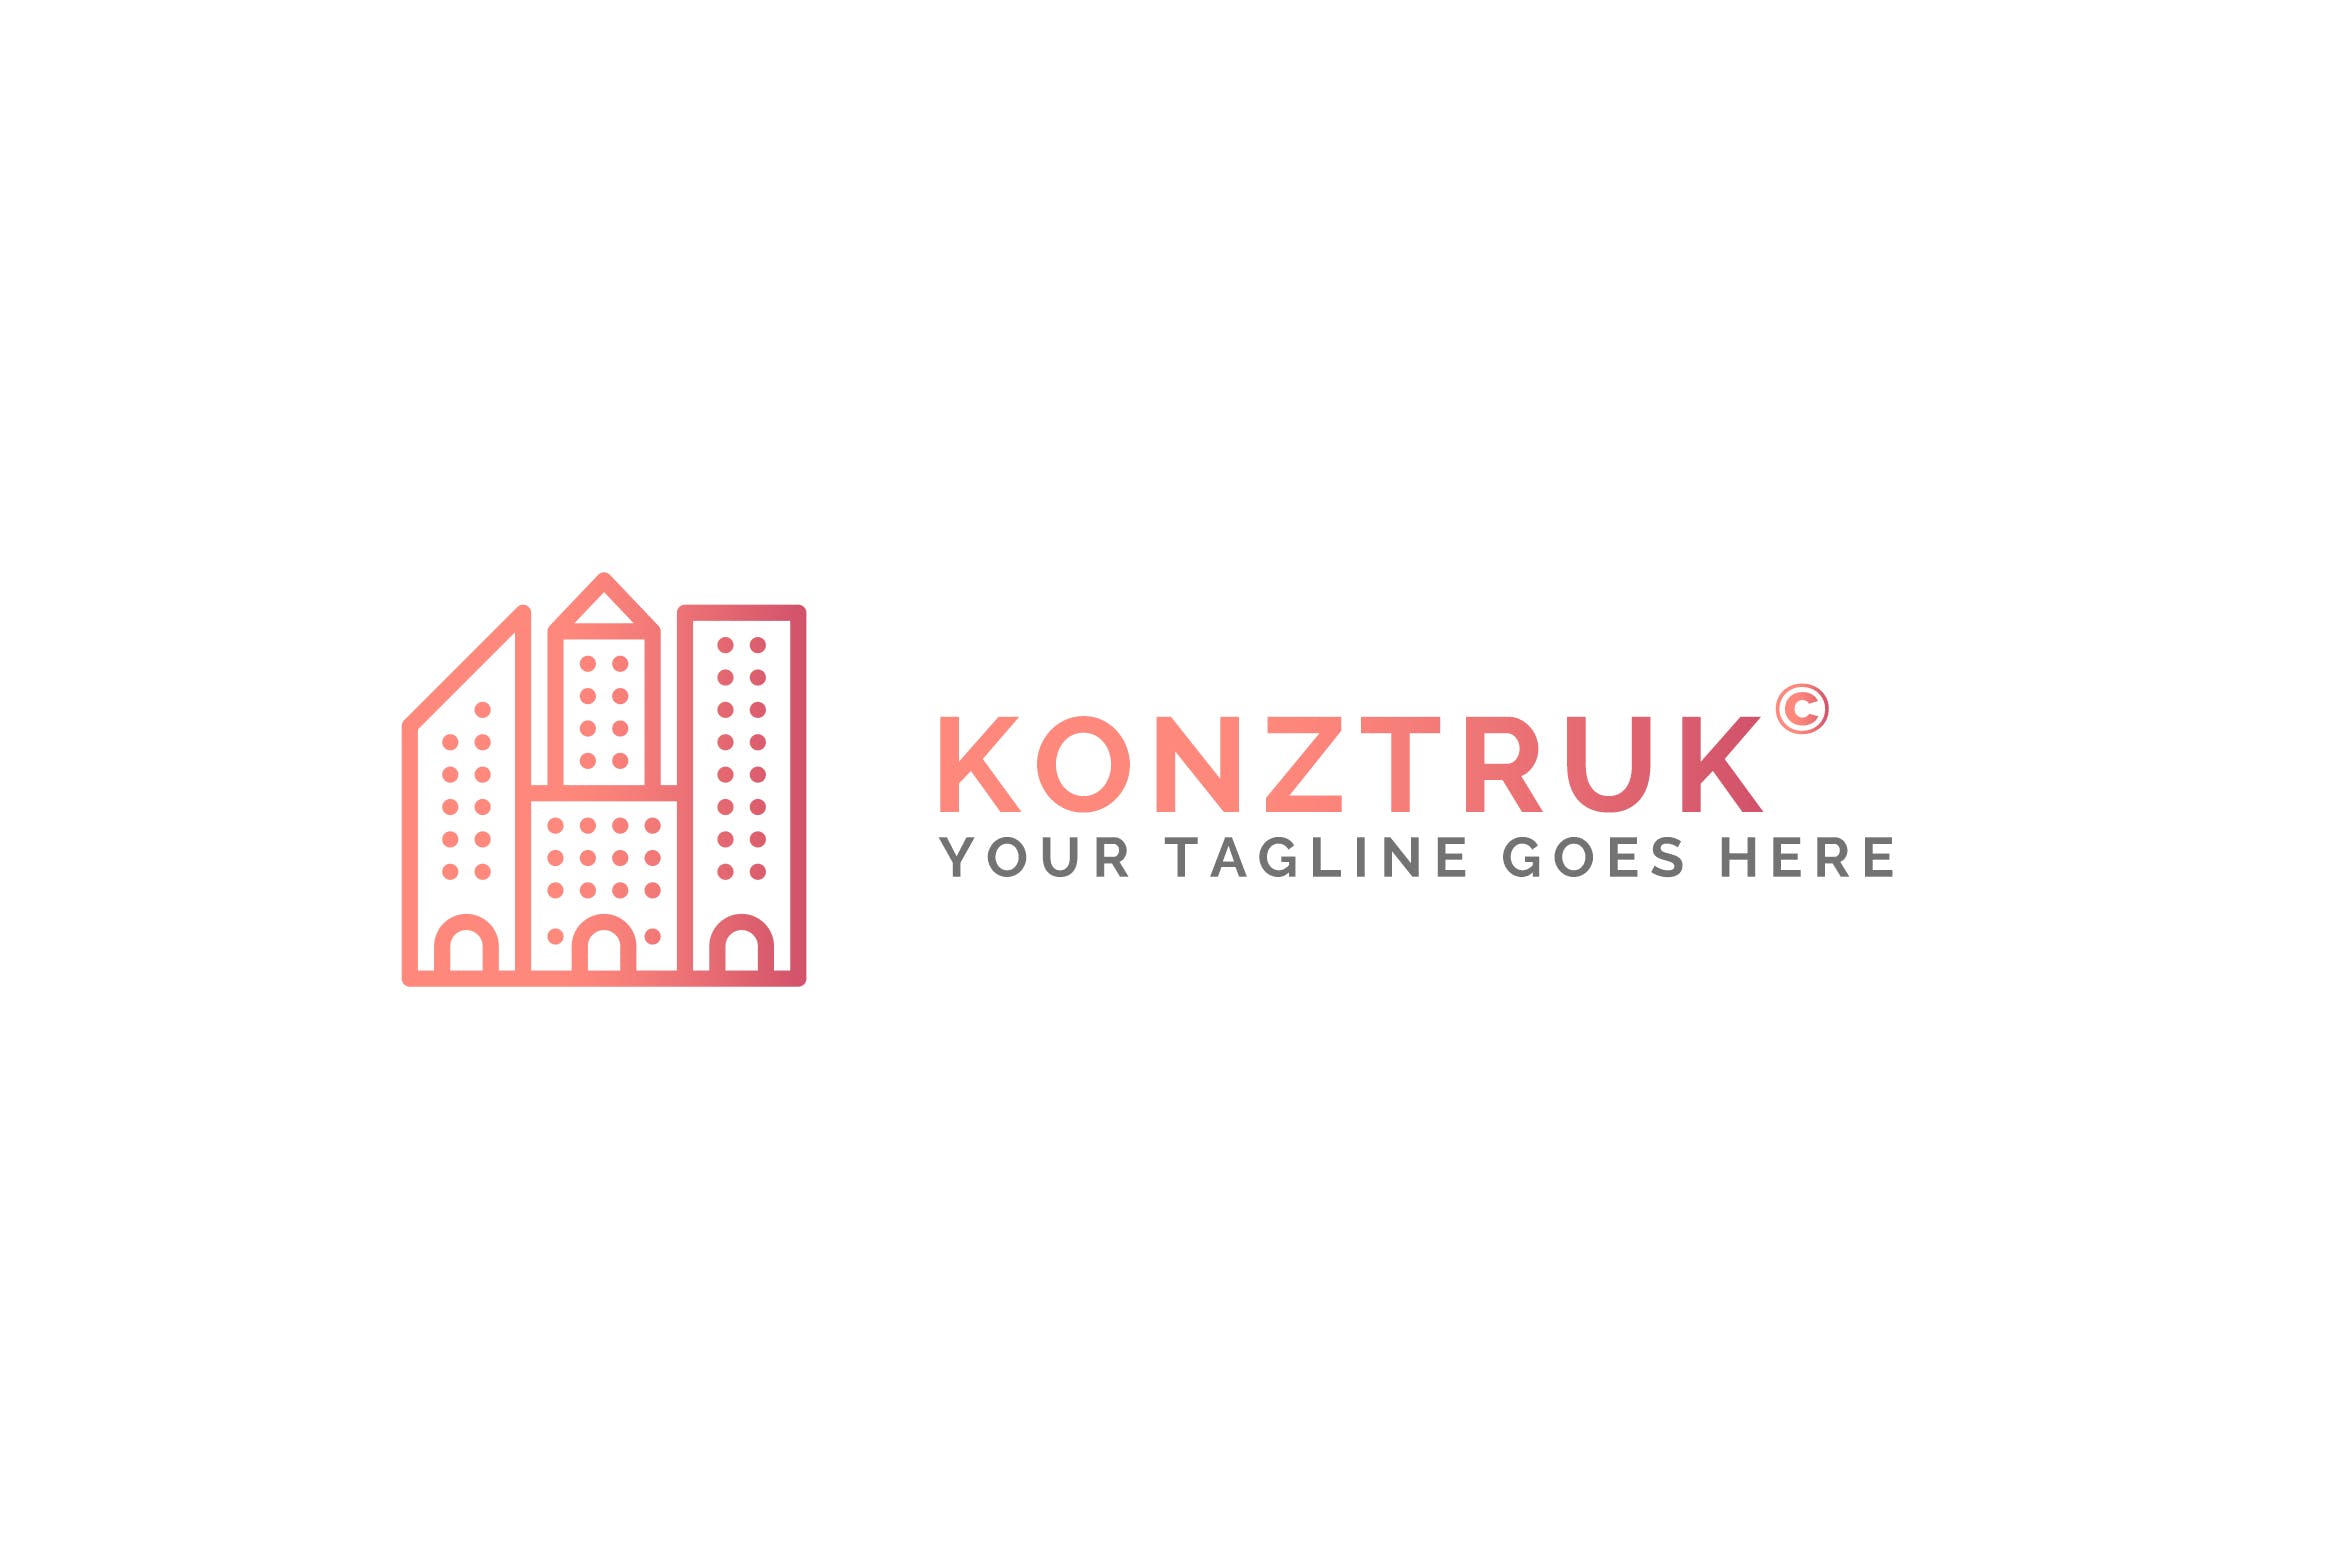 建筑几何图形建筑类Logo设计第一素材精选模板 Konztruk – Architecture Logo Template插图